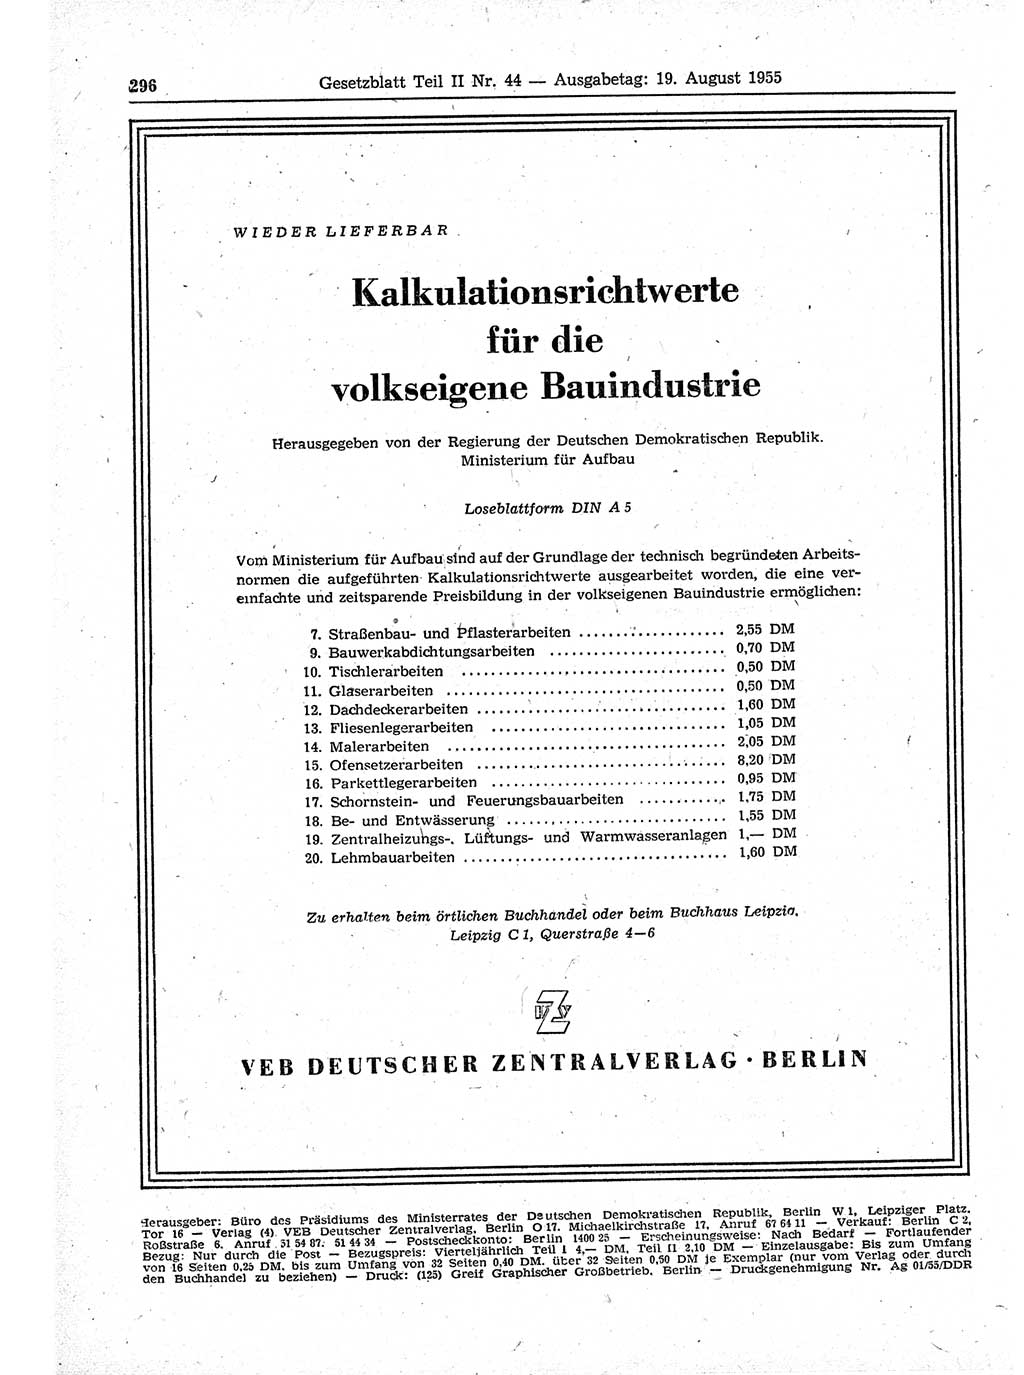 Gesetzblatt (GBl.) der Deutschen Demokratischen Republik (DDR) Teil ⅠⅠ 1955, Seite 296 (GBl. DDR ⅠⅠ 1955, S. 296)